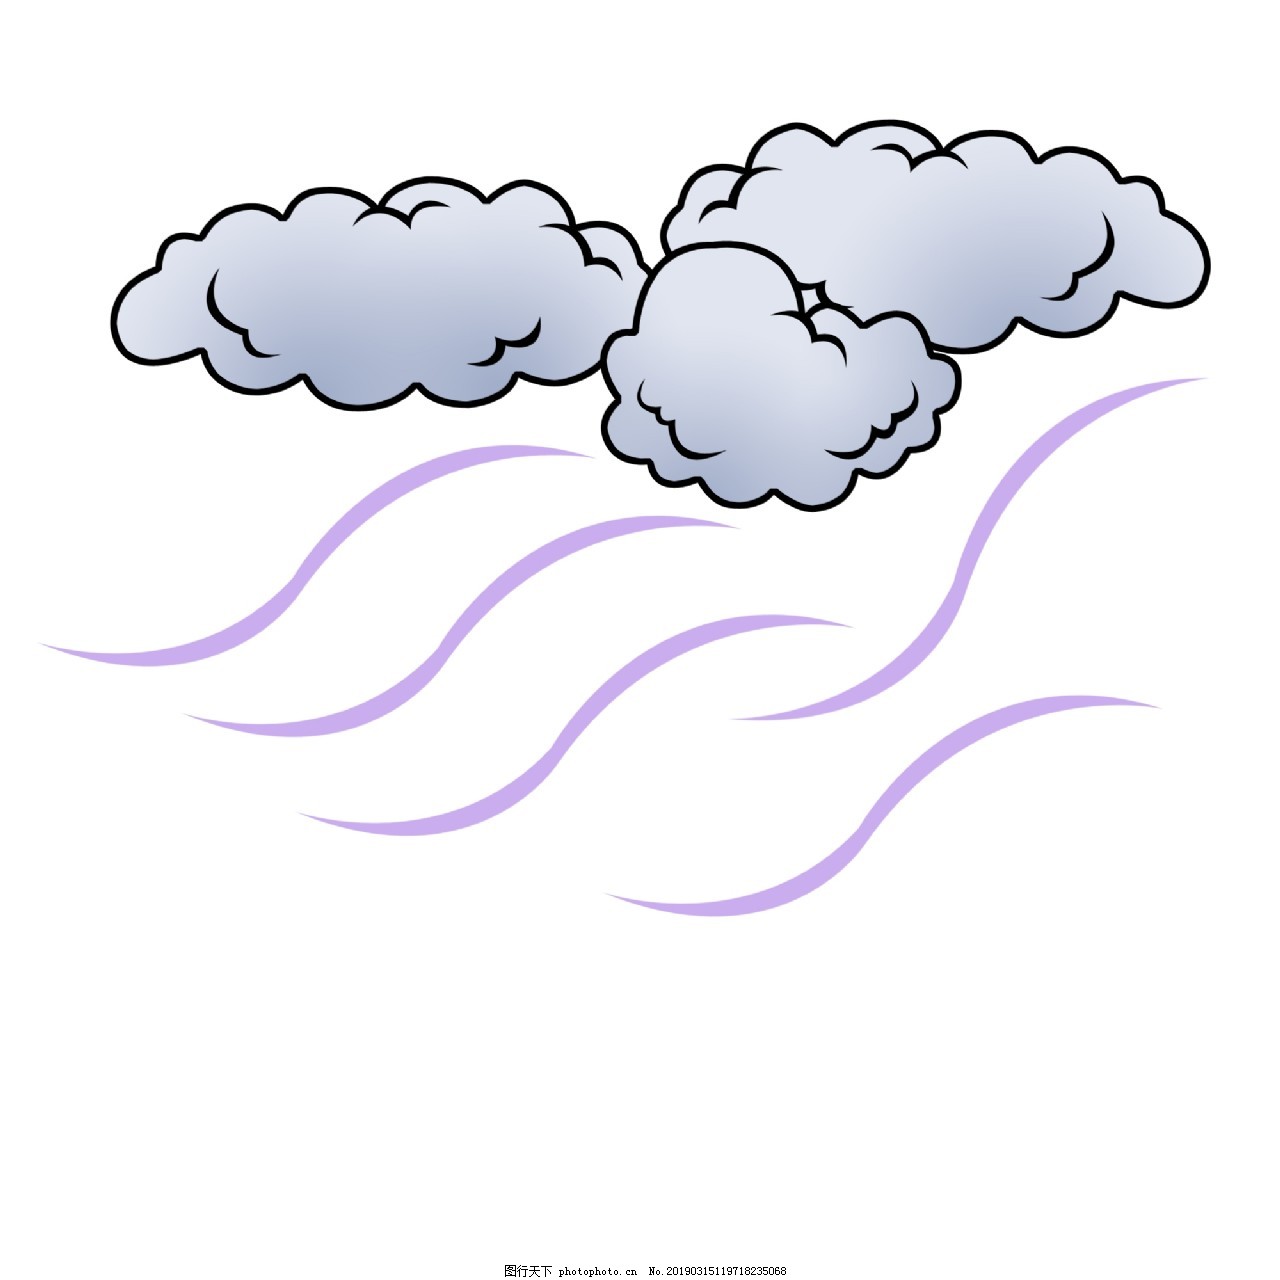 卡通刮风下雨天跟雨伞拔河的少年-欧莱凯设计网